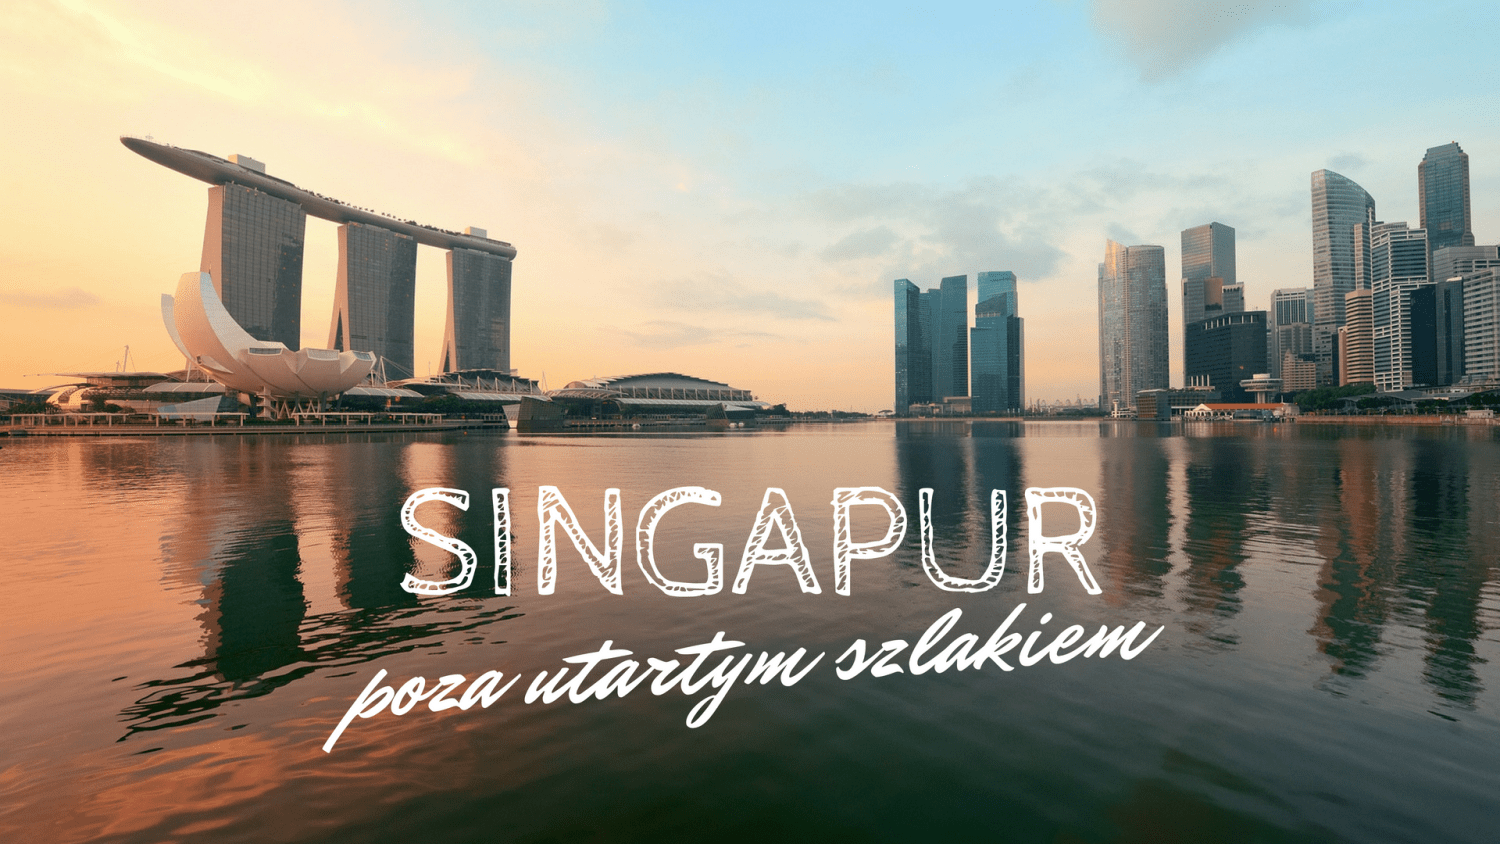 Singapur poza utartym szlakiem